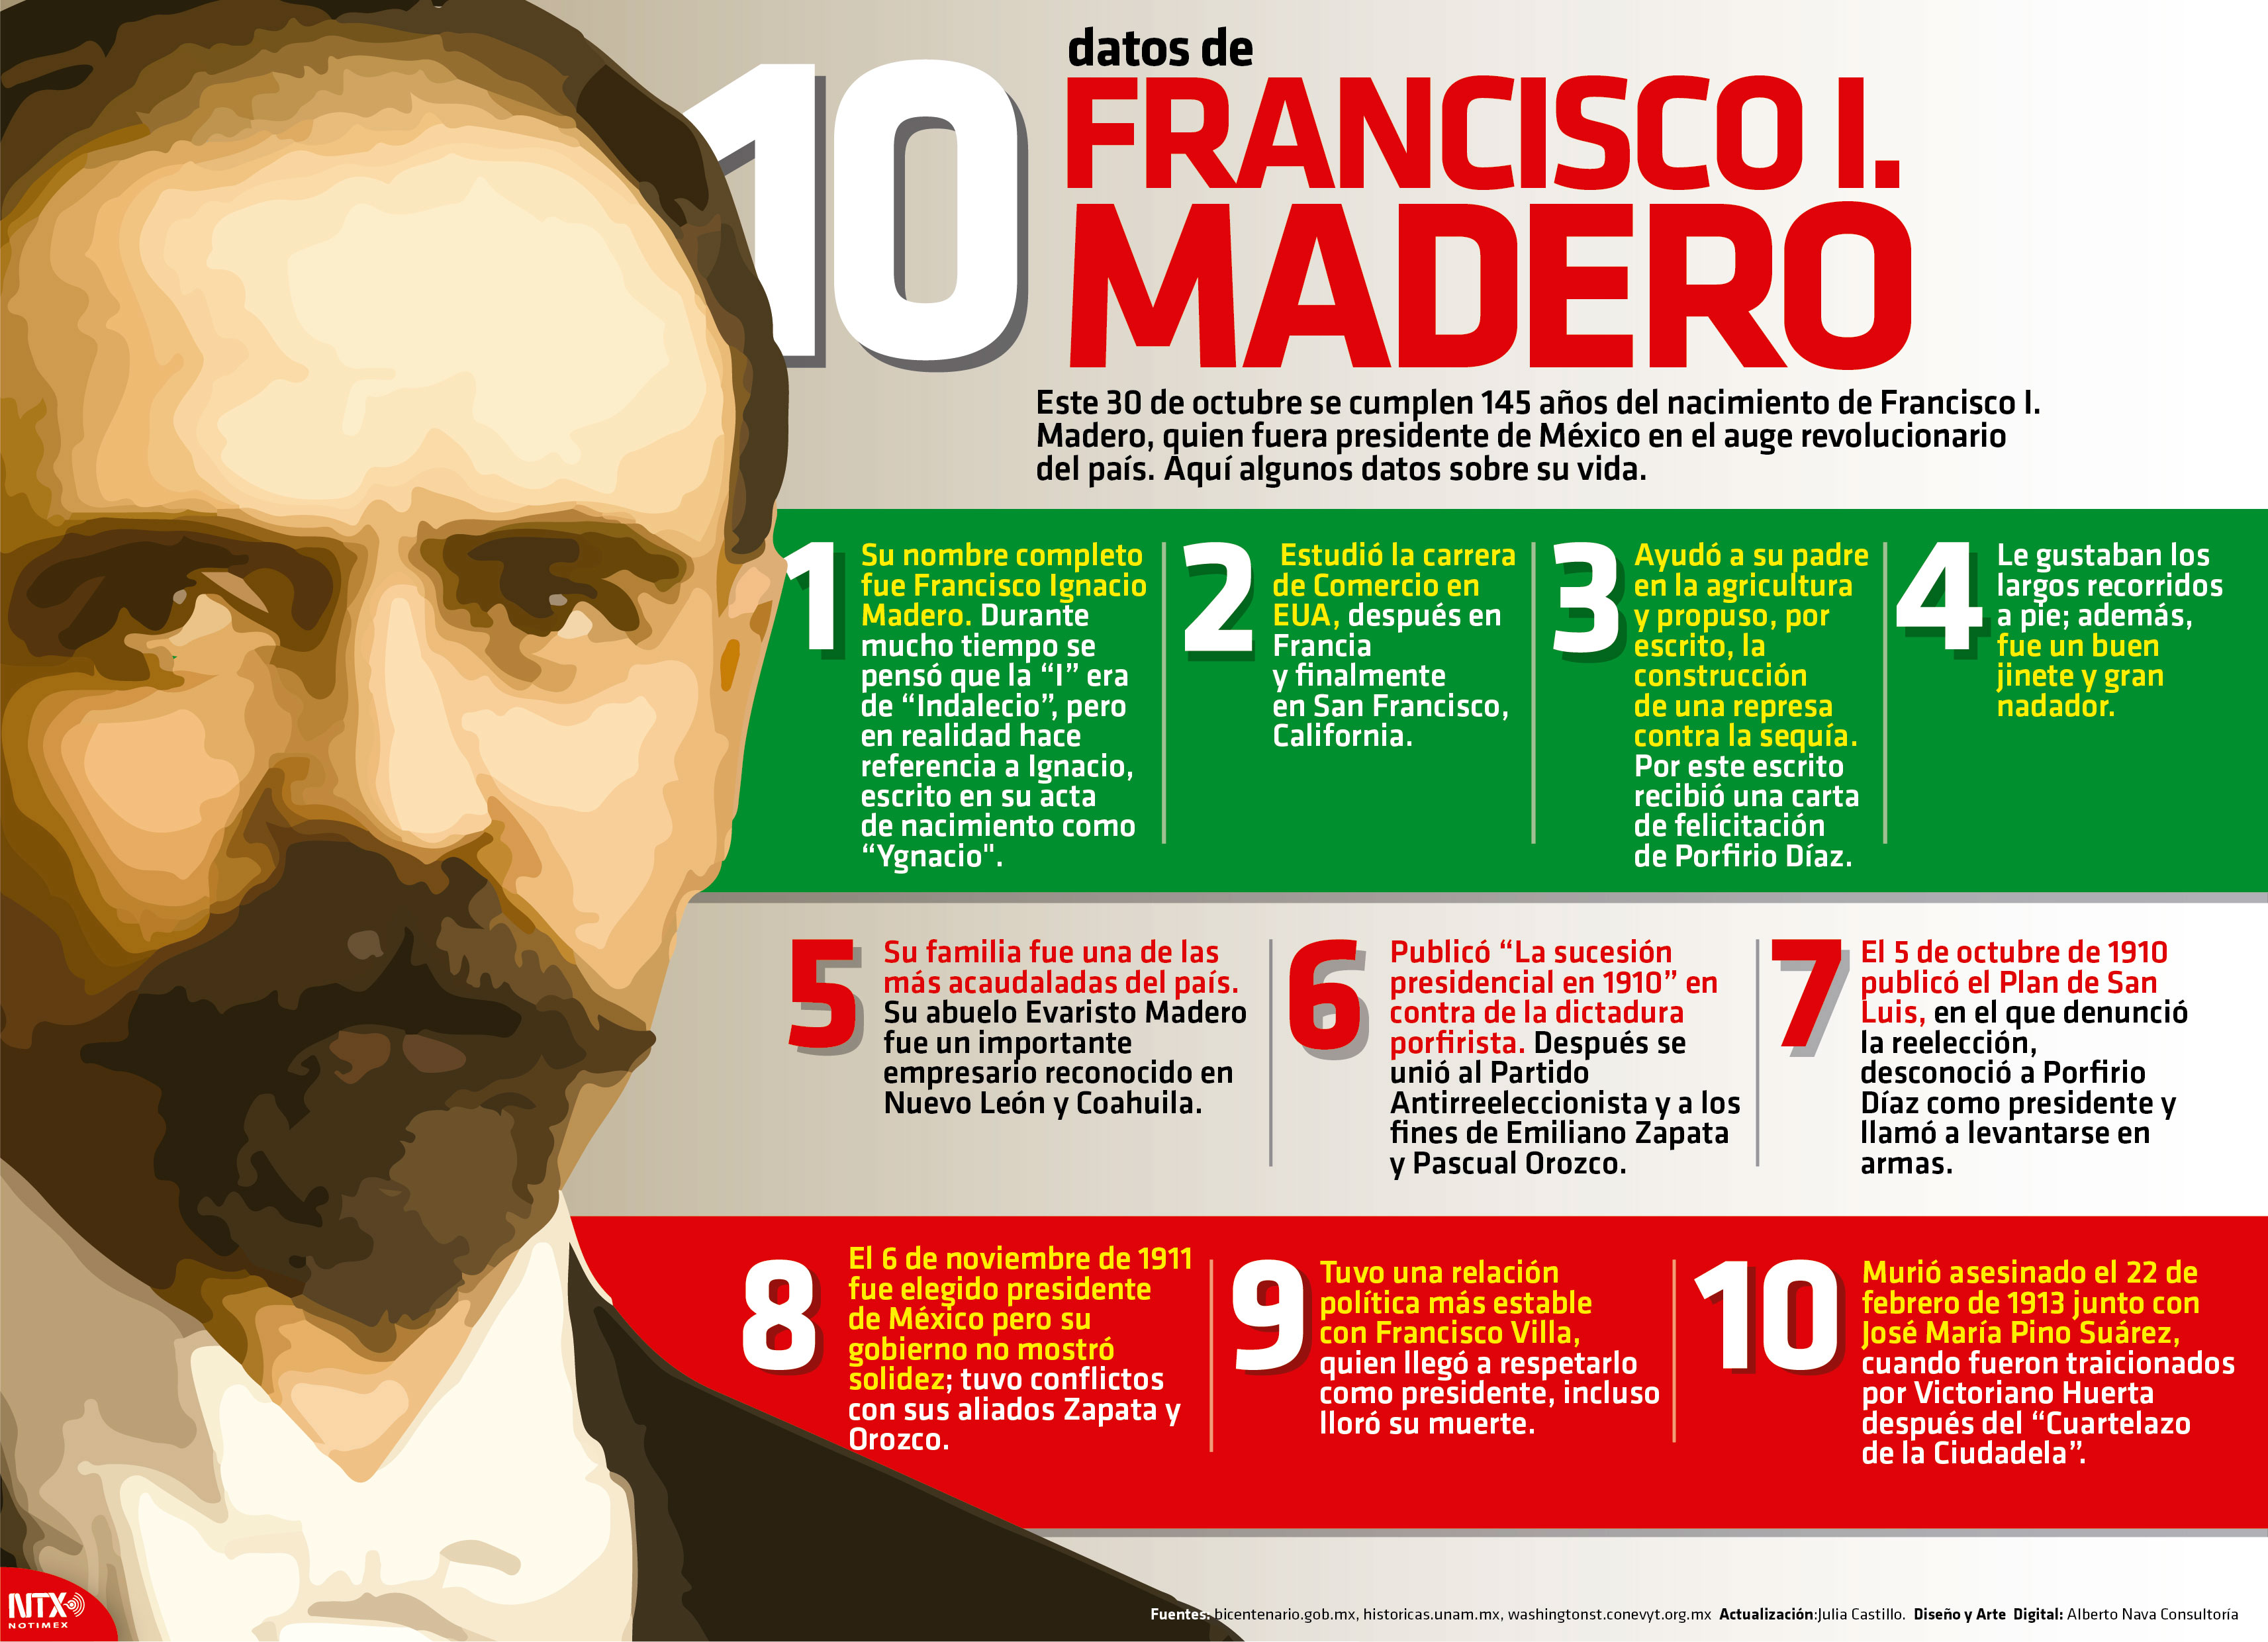 10 datos de Francisco I. Madero